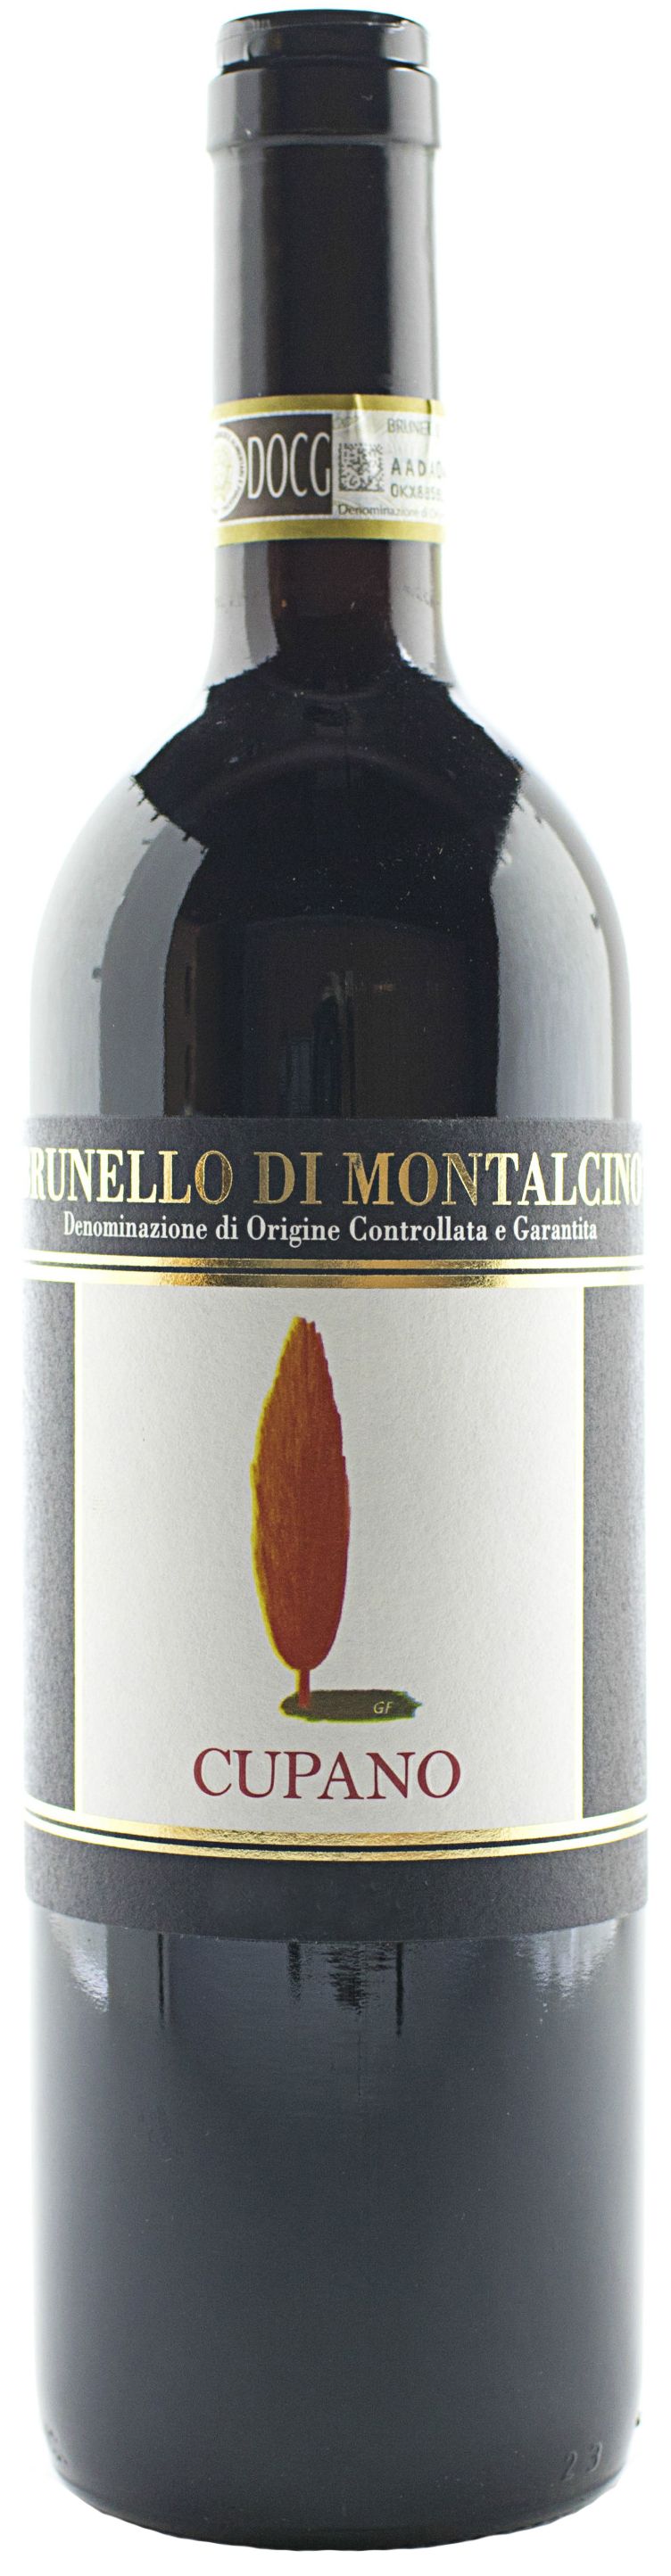 Cupano, Brunello Di Montalcino, 2002